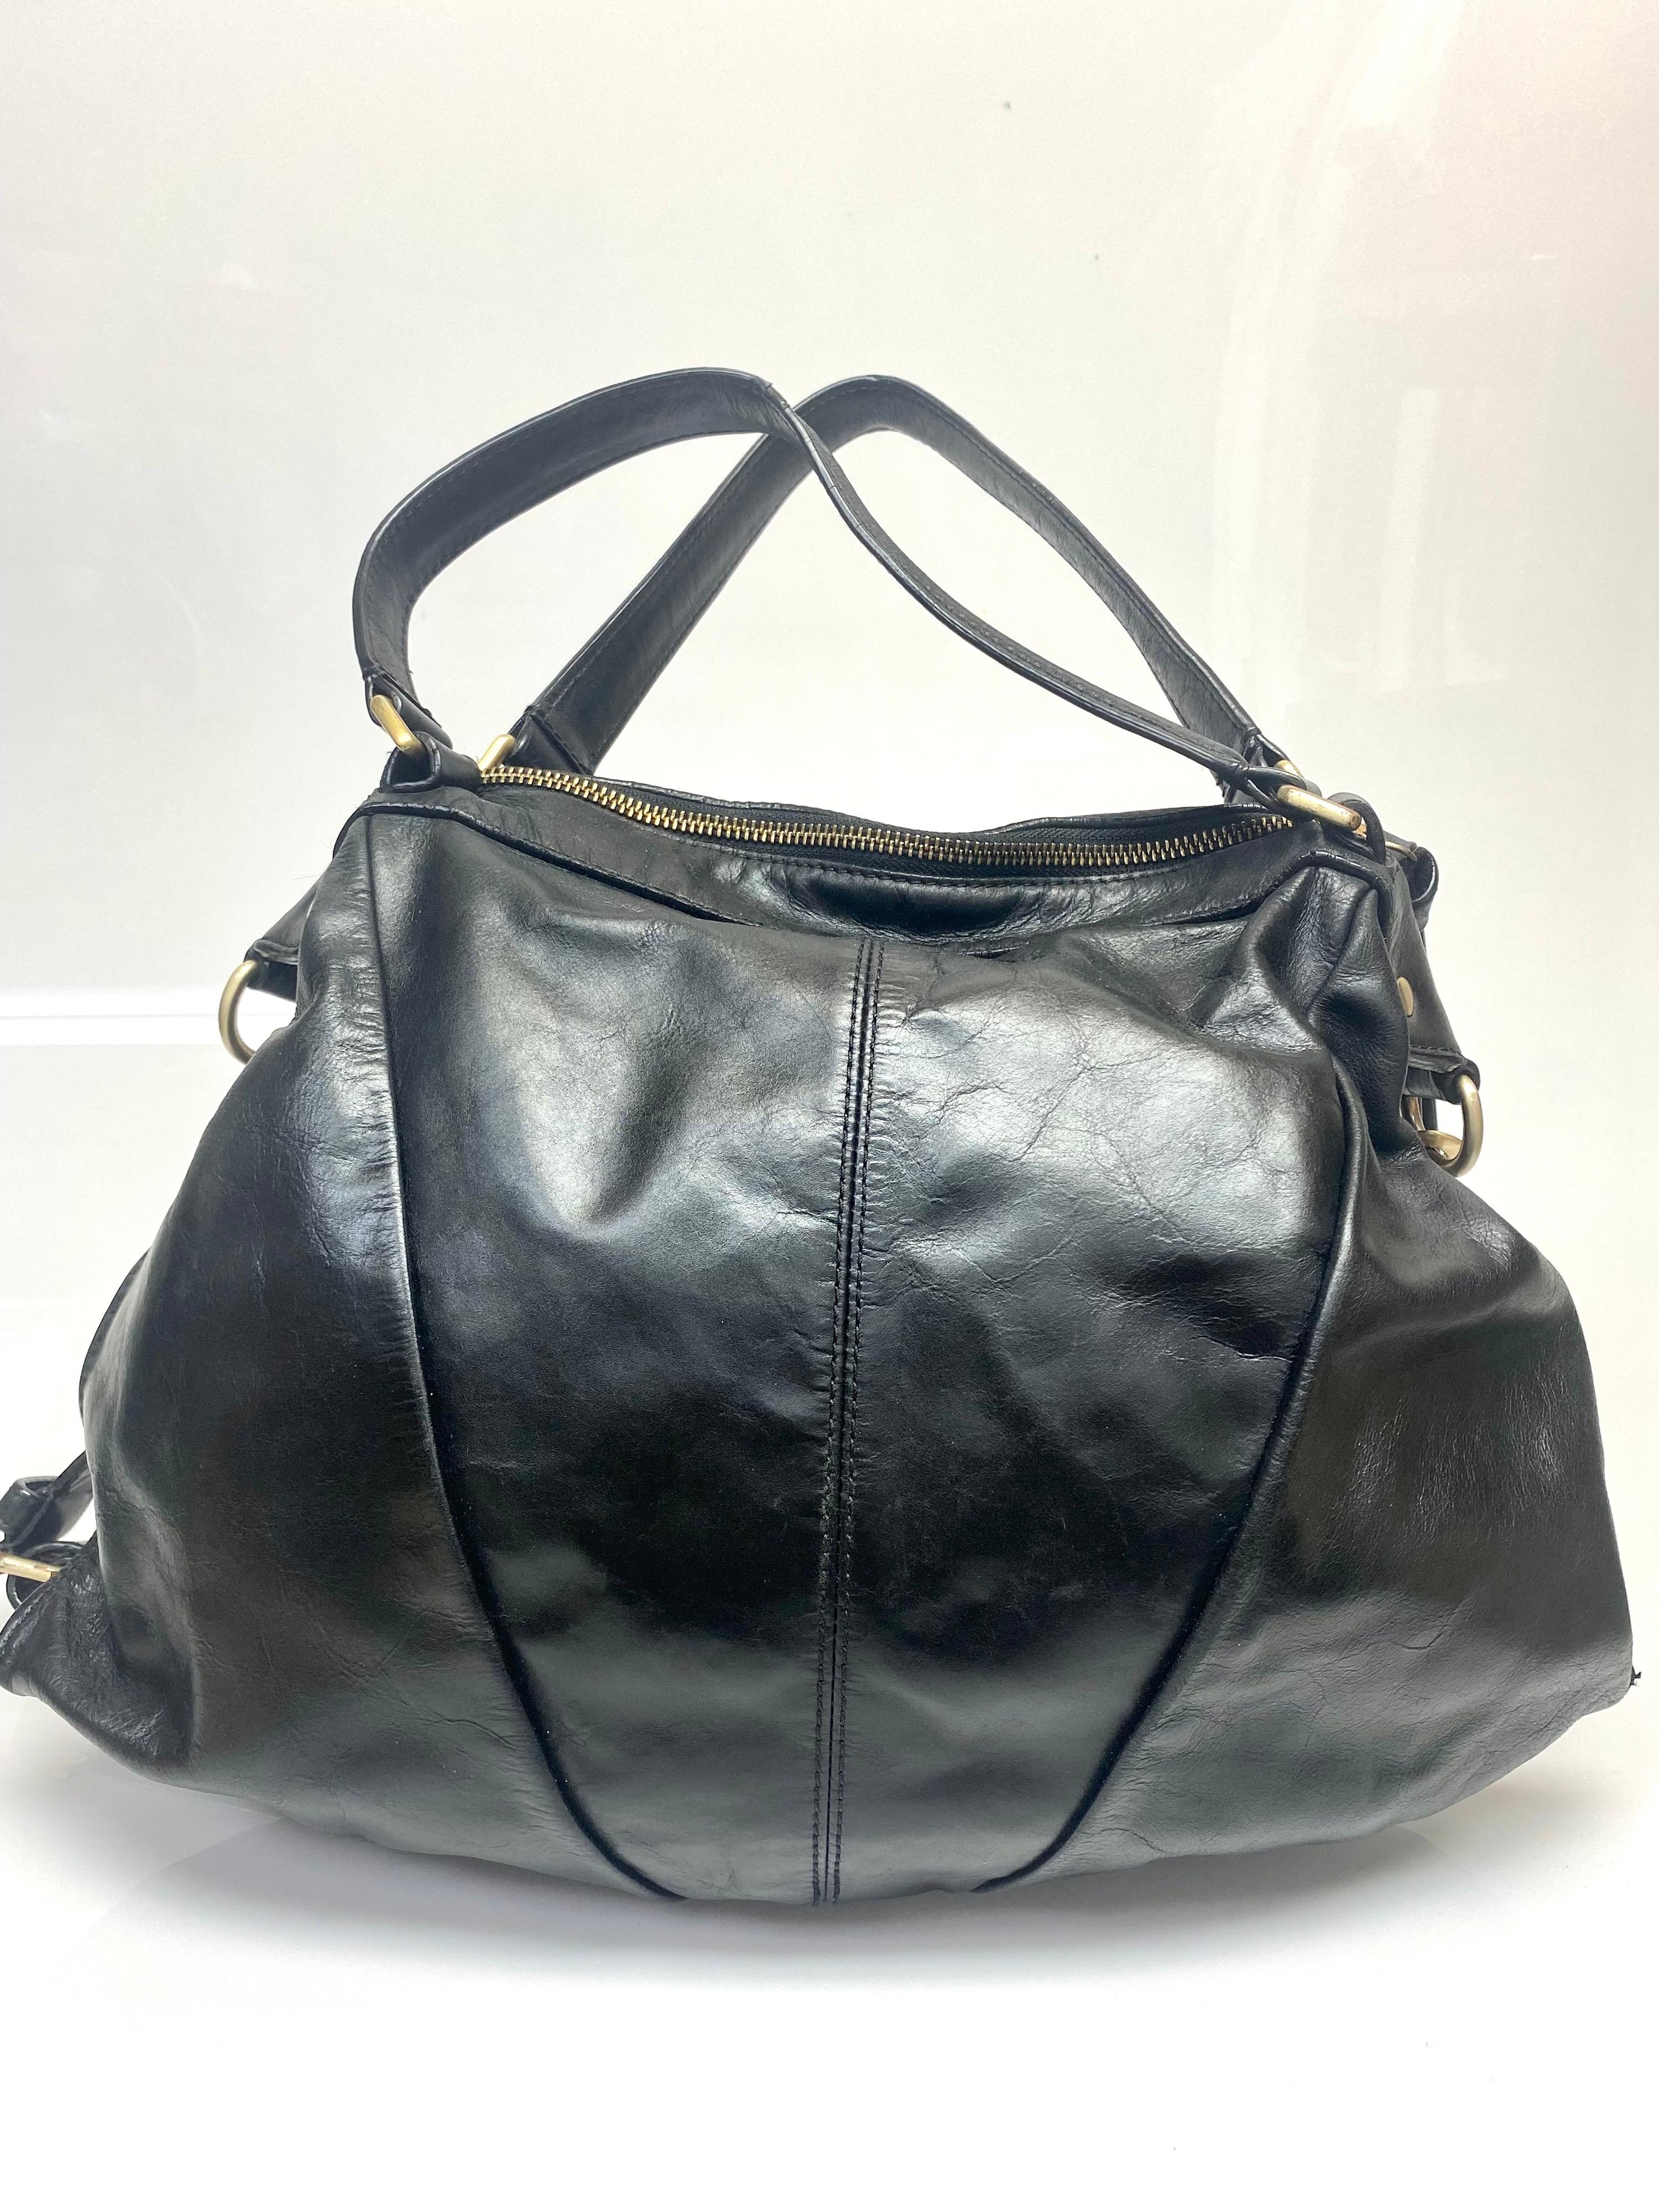 Givenchy Black Leather Shoulder Handbag-GHW For Sale 1